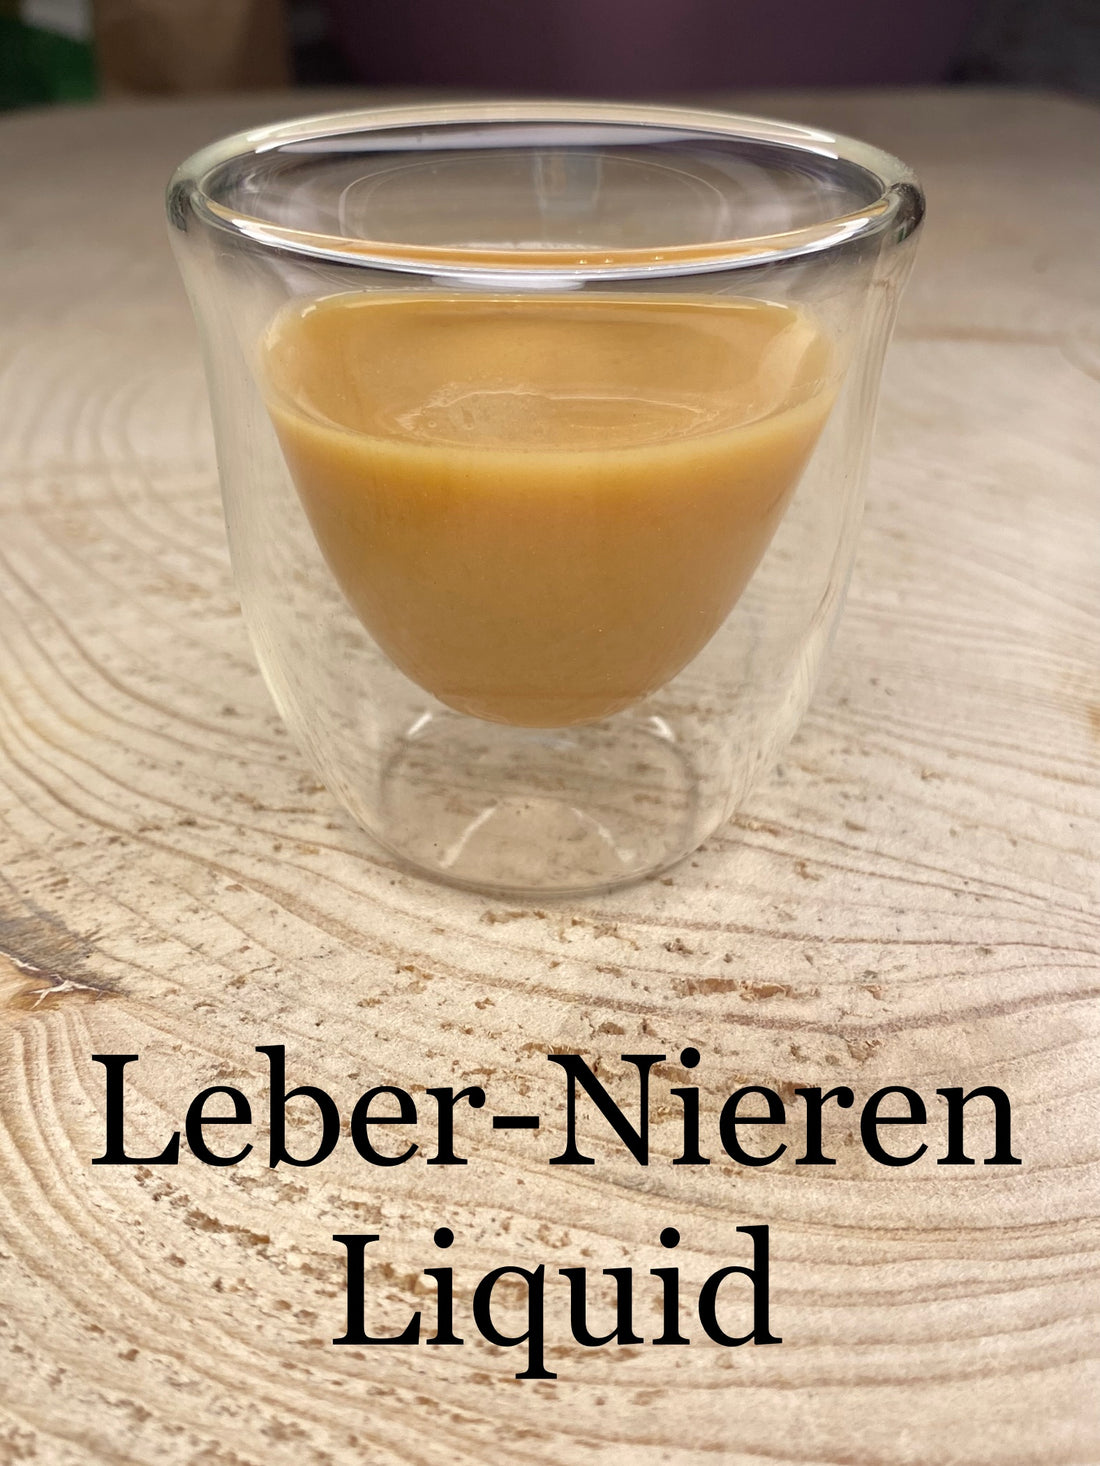 Leber-Nieren Liquid